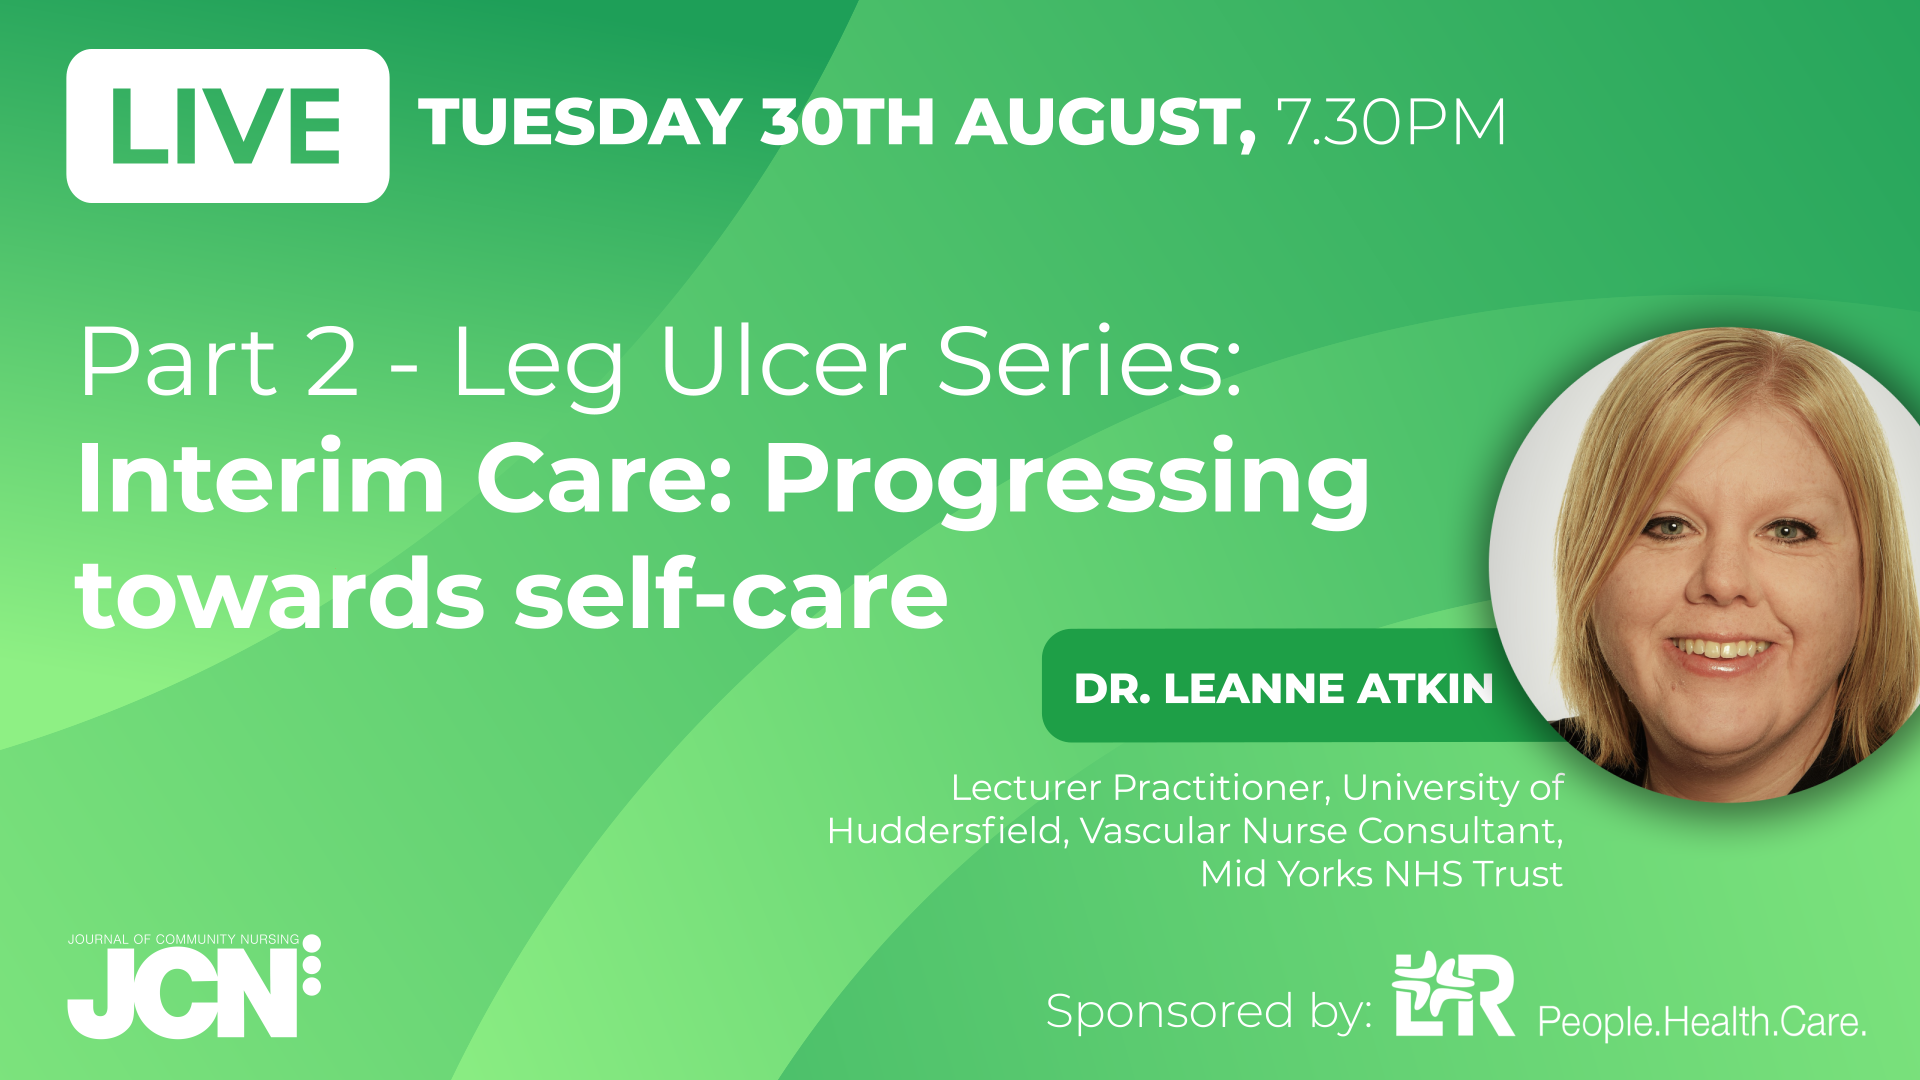 Facebook Live: Part 2 - Leg Ulcers: Interim Care - Progressing towards self-care